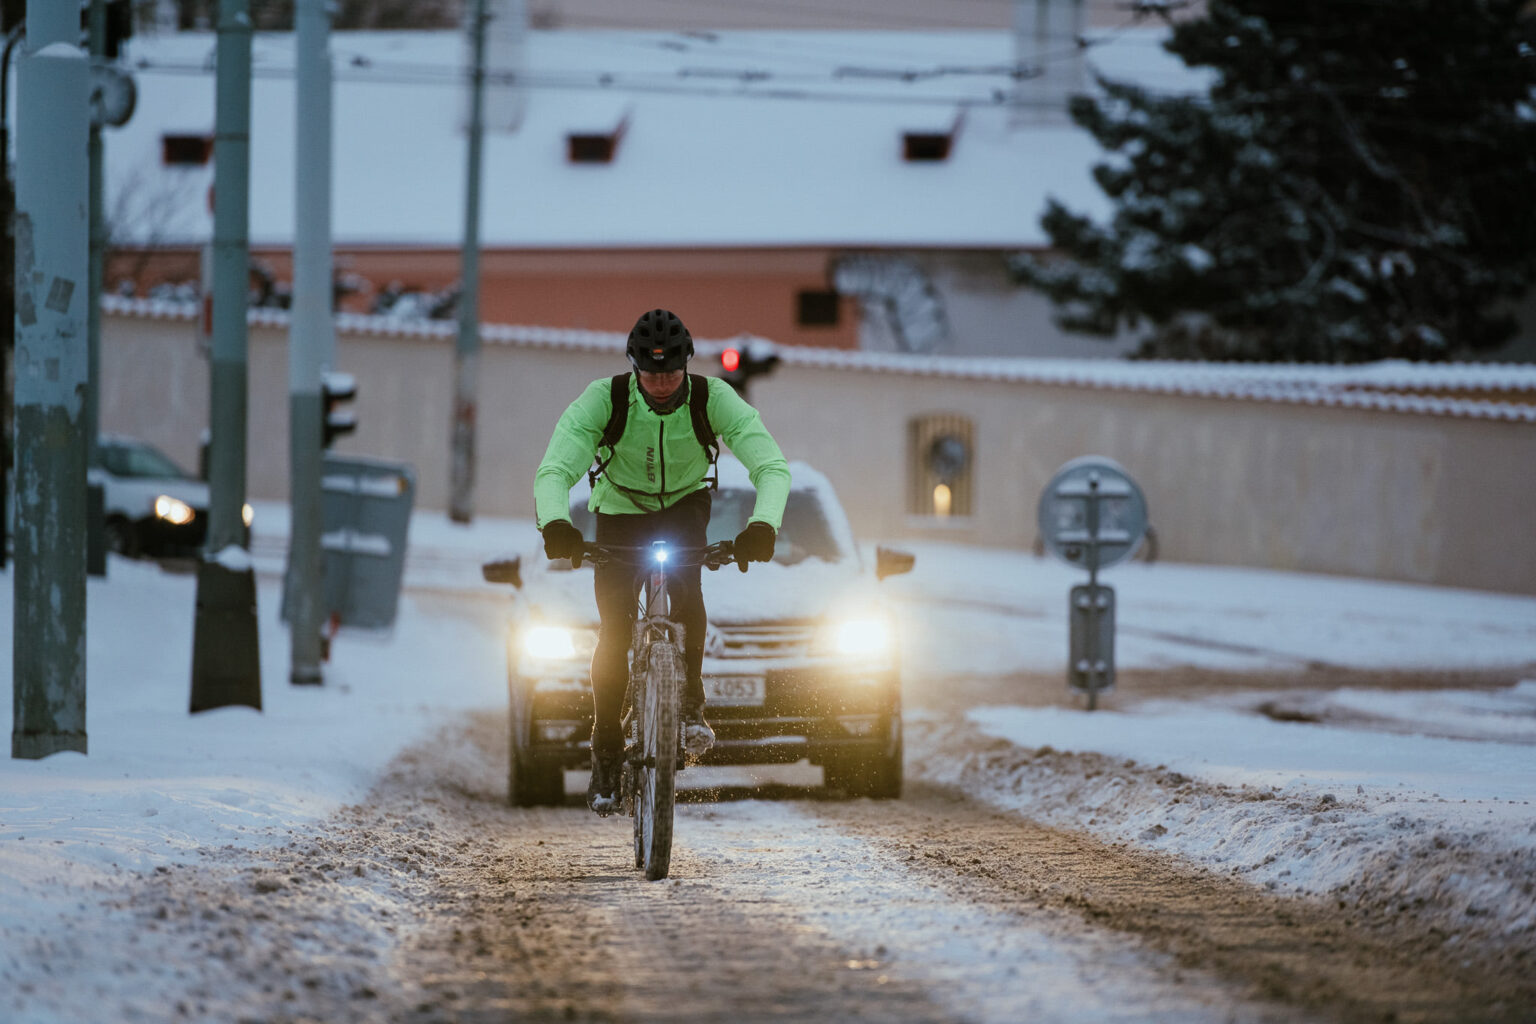 Jízda v zimě klade na cyklistu větší nároky Zdroj: Jan Hromádko